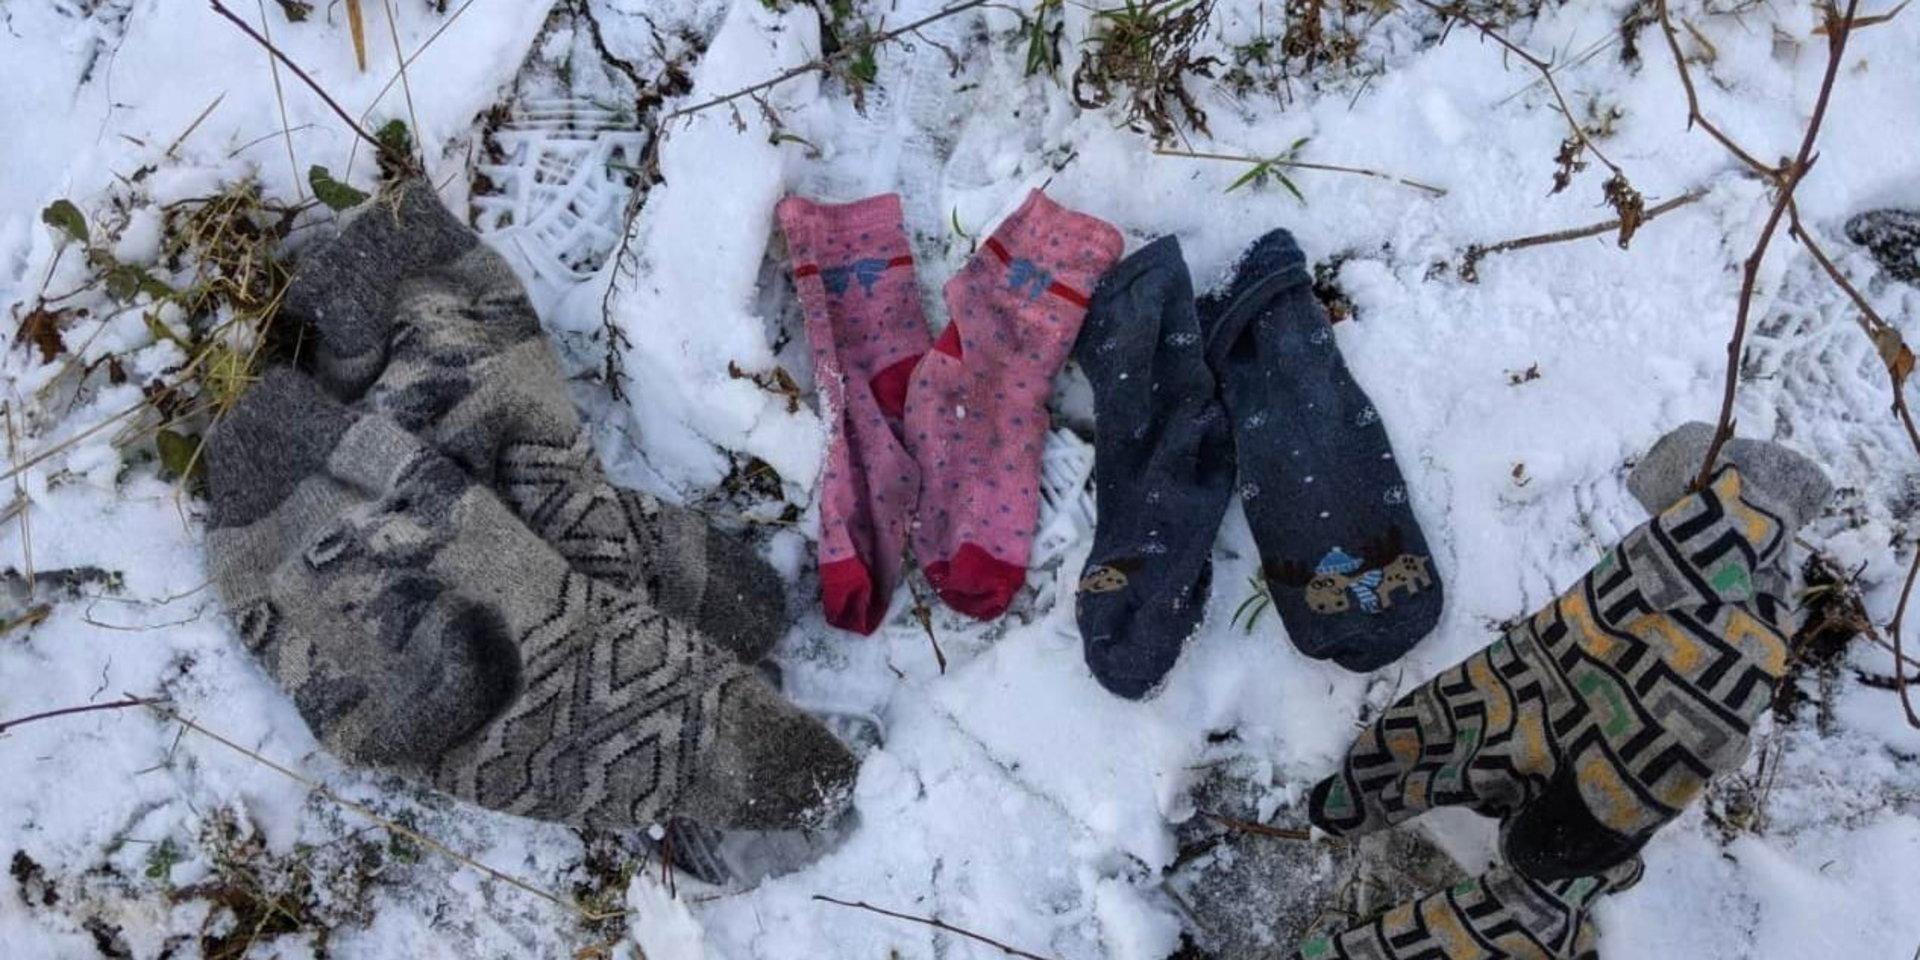 En familj har lämnat strumpor efter sig efter att ha förts bort ur skogen i gränsområdet av litauisk gränspolis. Bild från december.